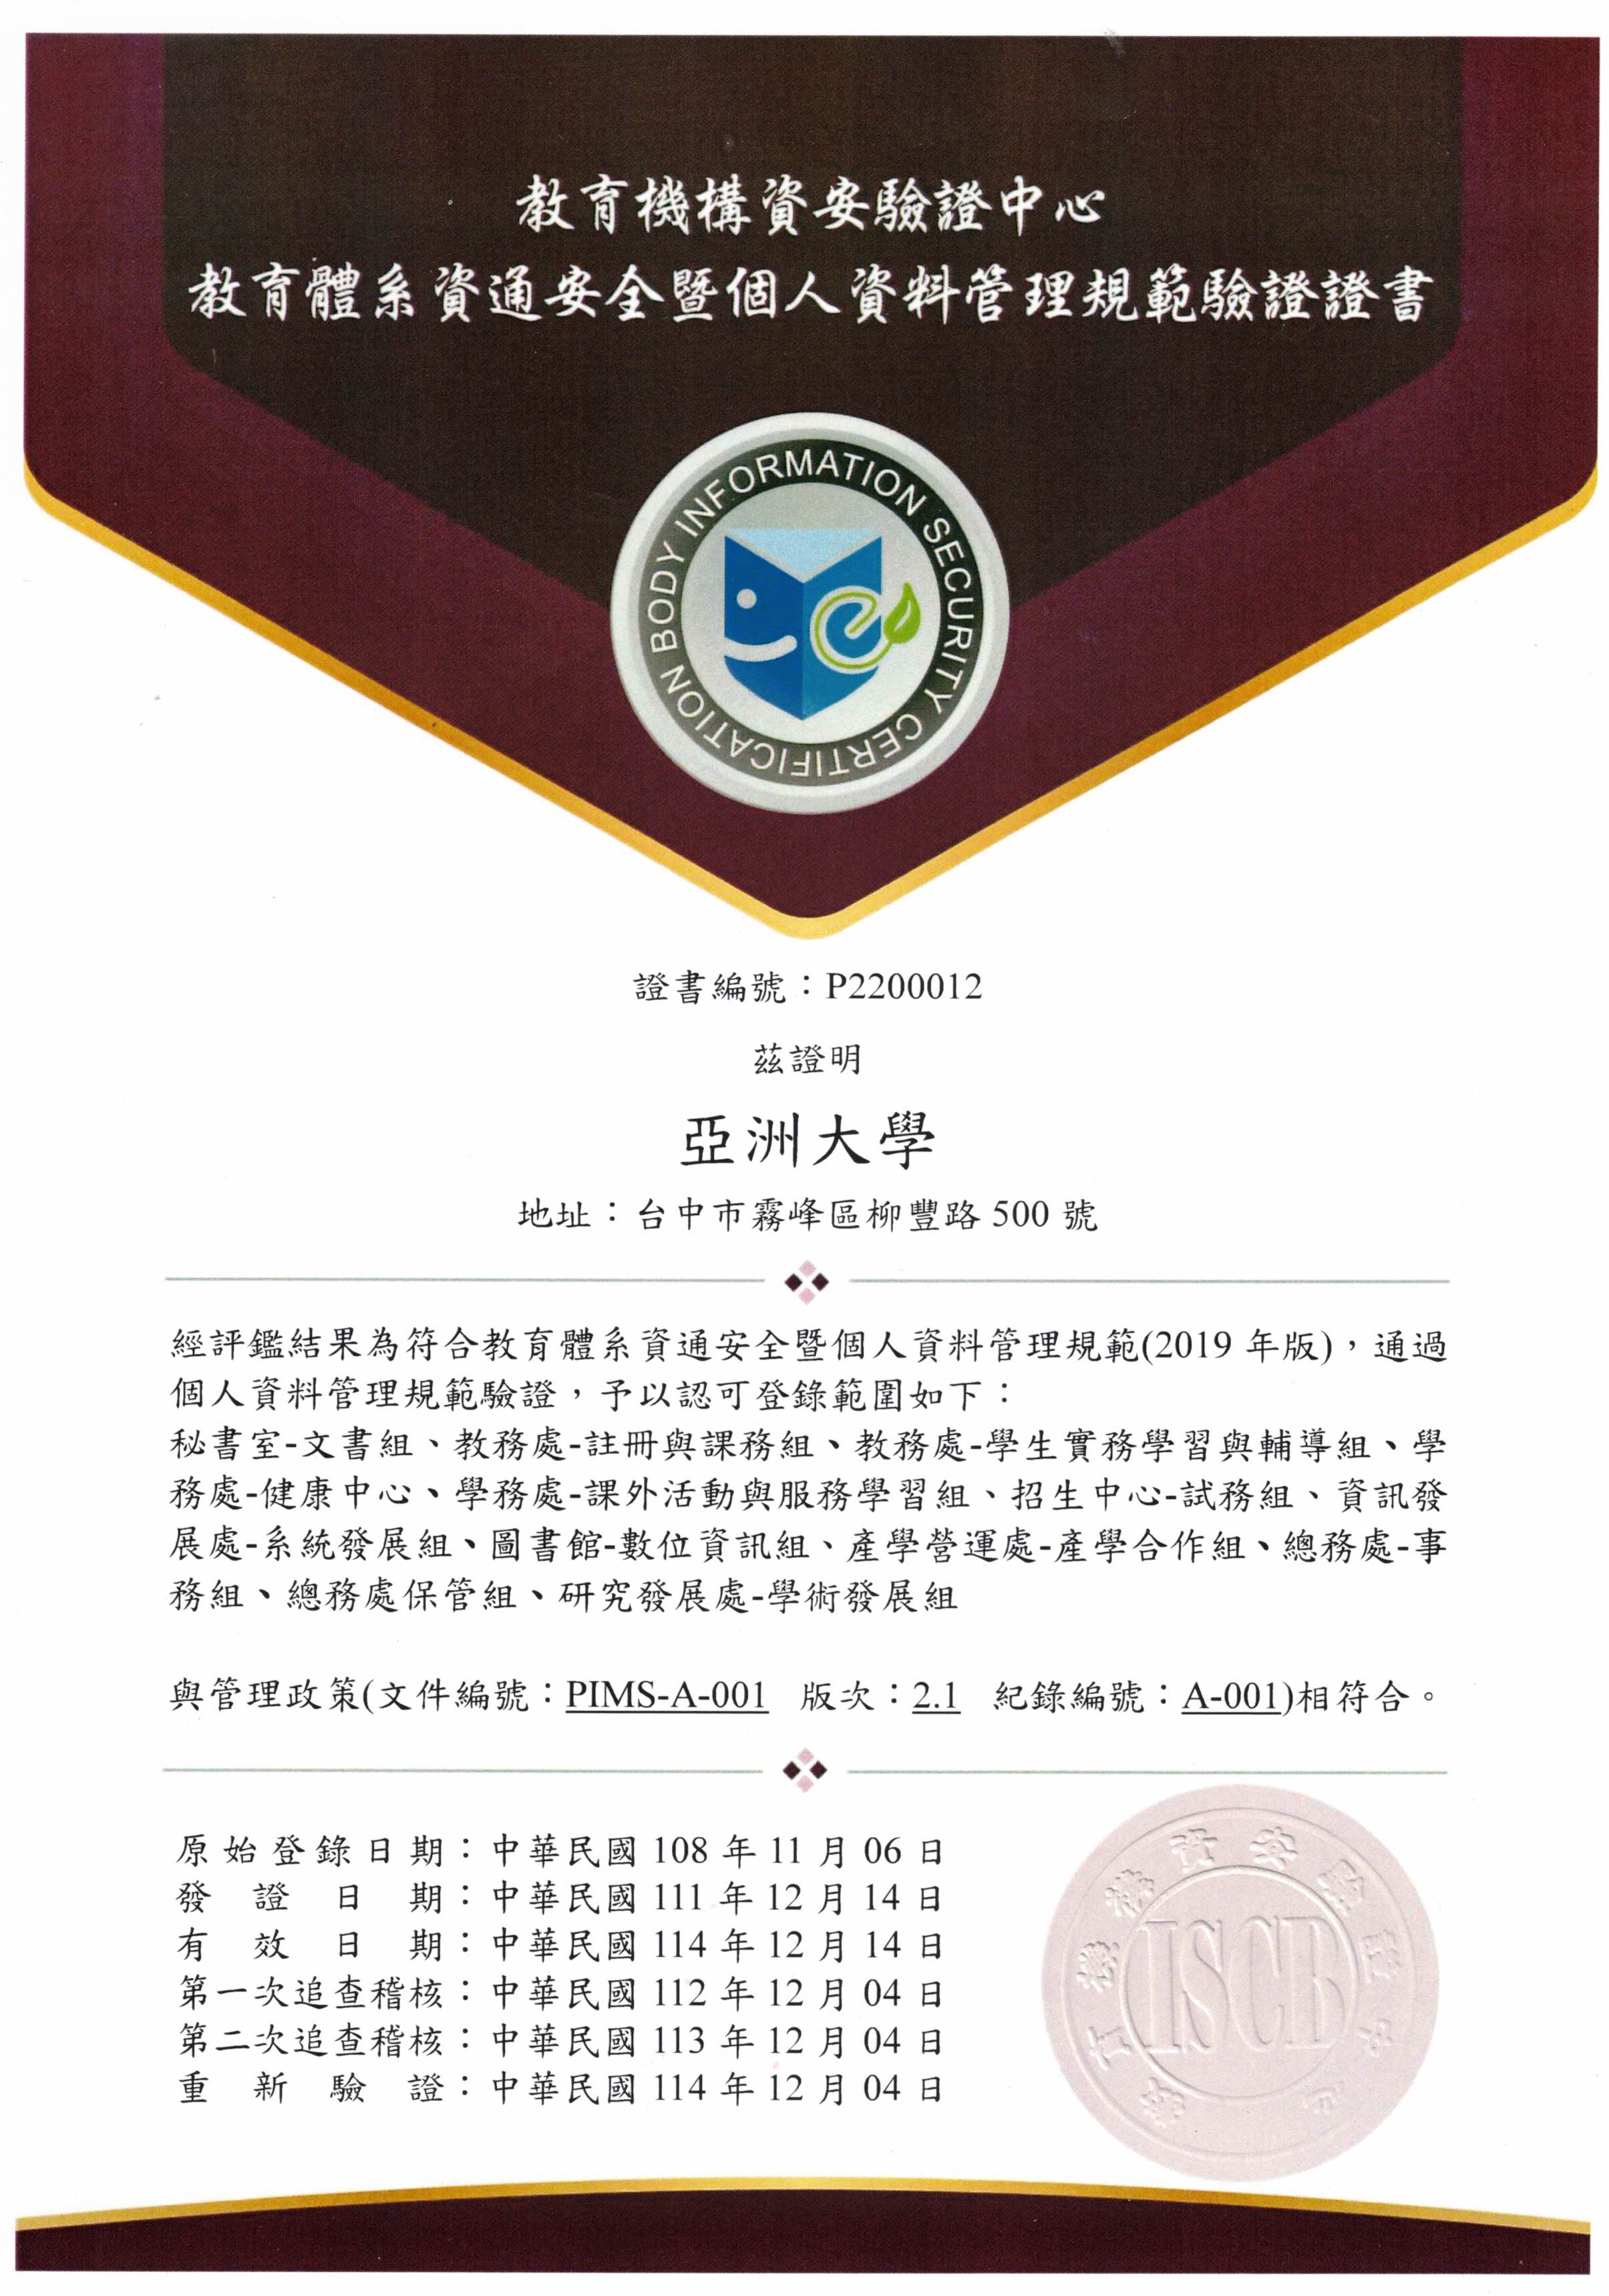 亚洲大学个人资料保护管理验证通过证书